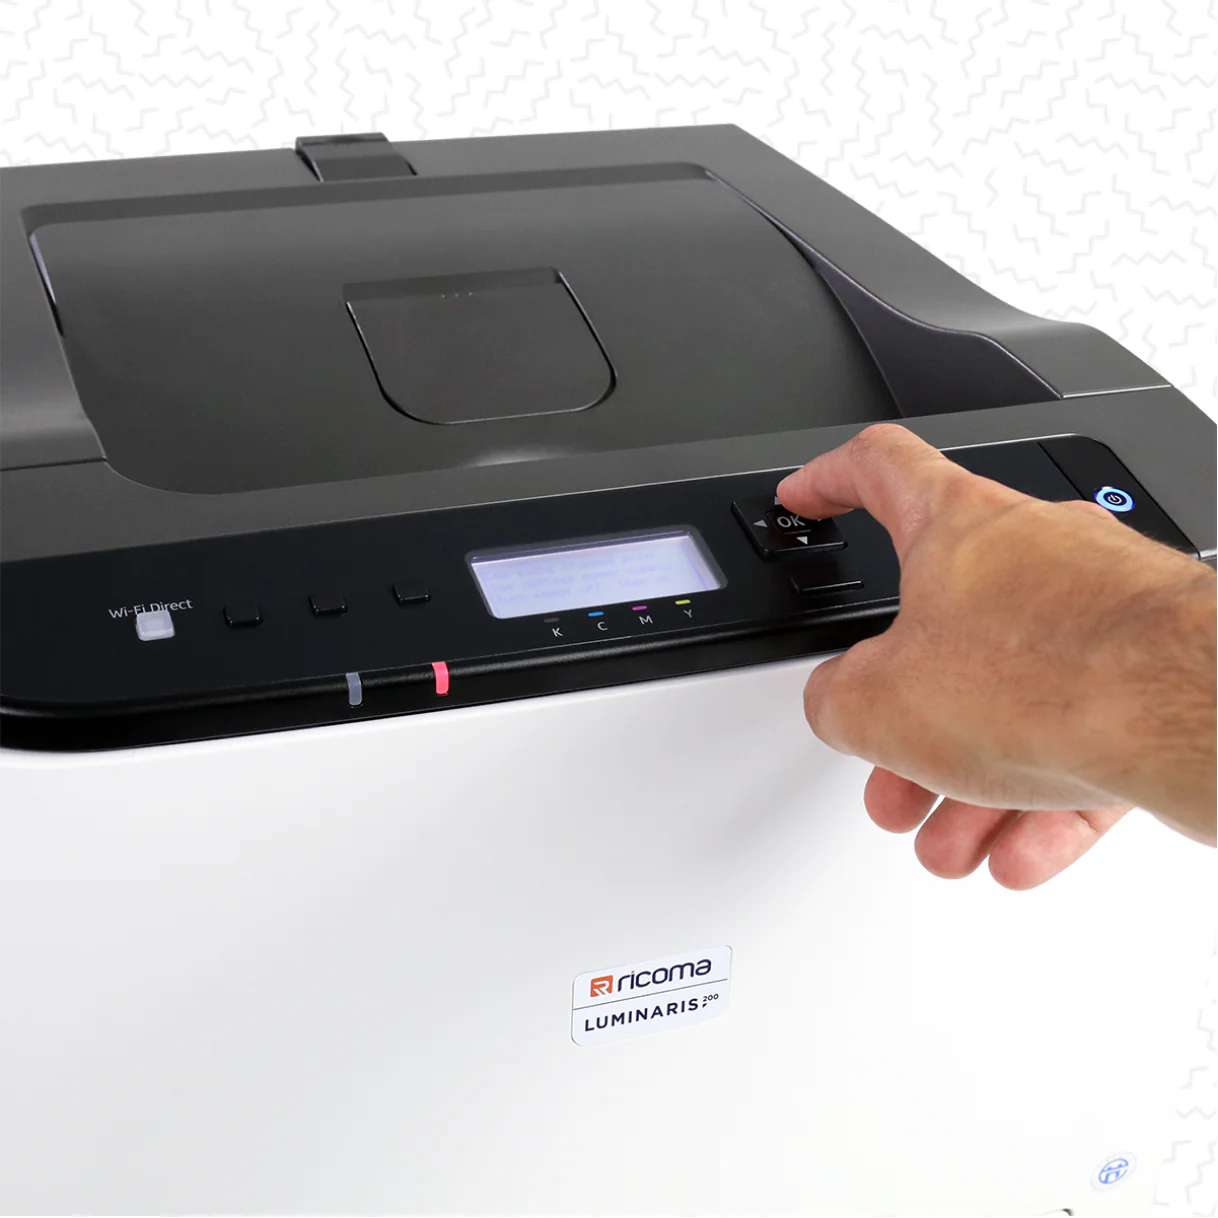 UniNet iColor 350 A4/Letter Size Toner-Based Dye Sublimation Transfer  Printer